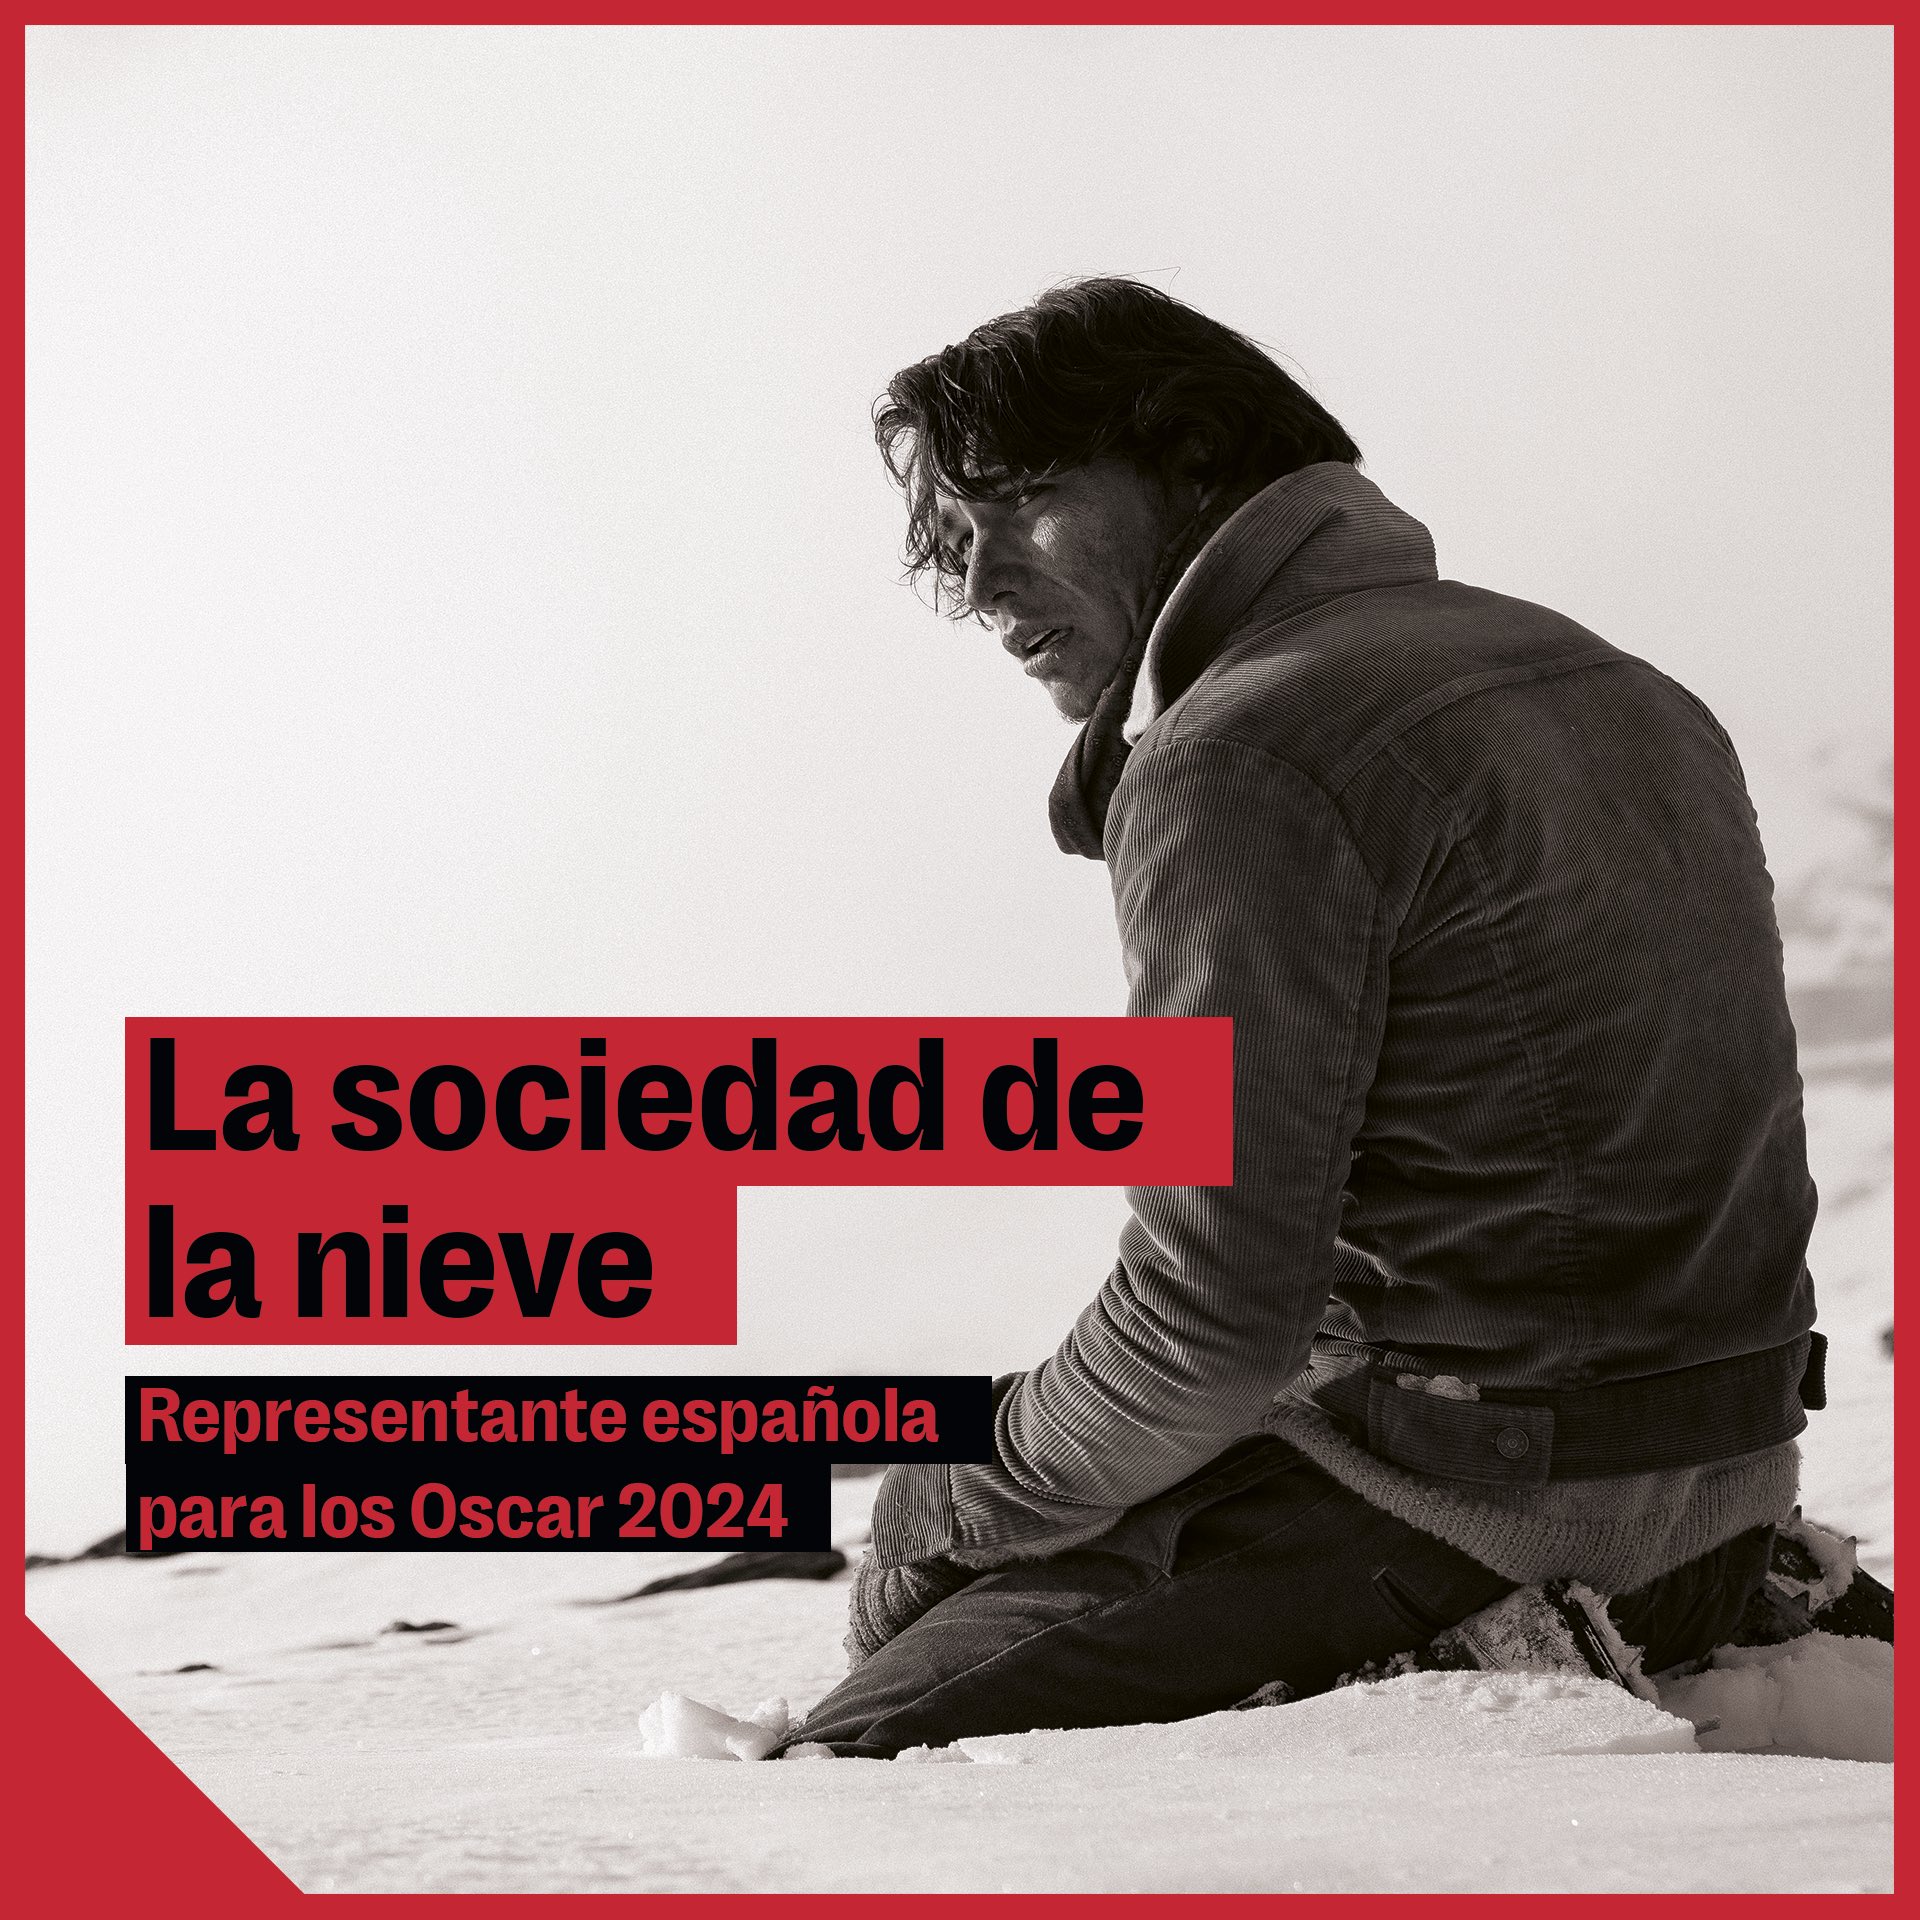 España selecciona ‘La sociedad de la nieve’ para el Oscar